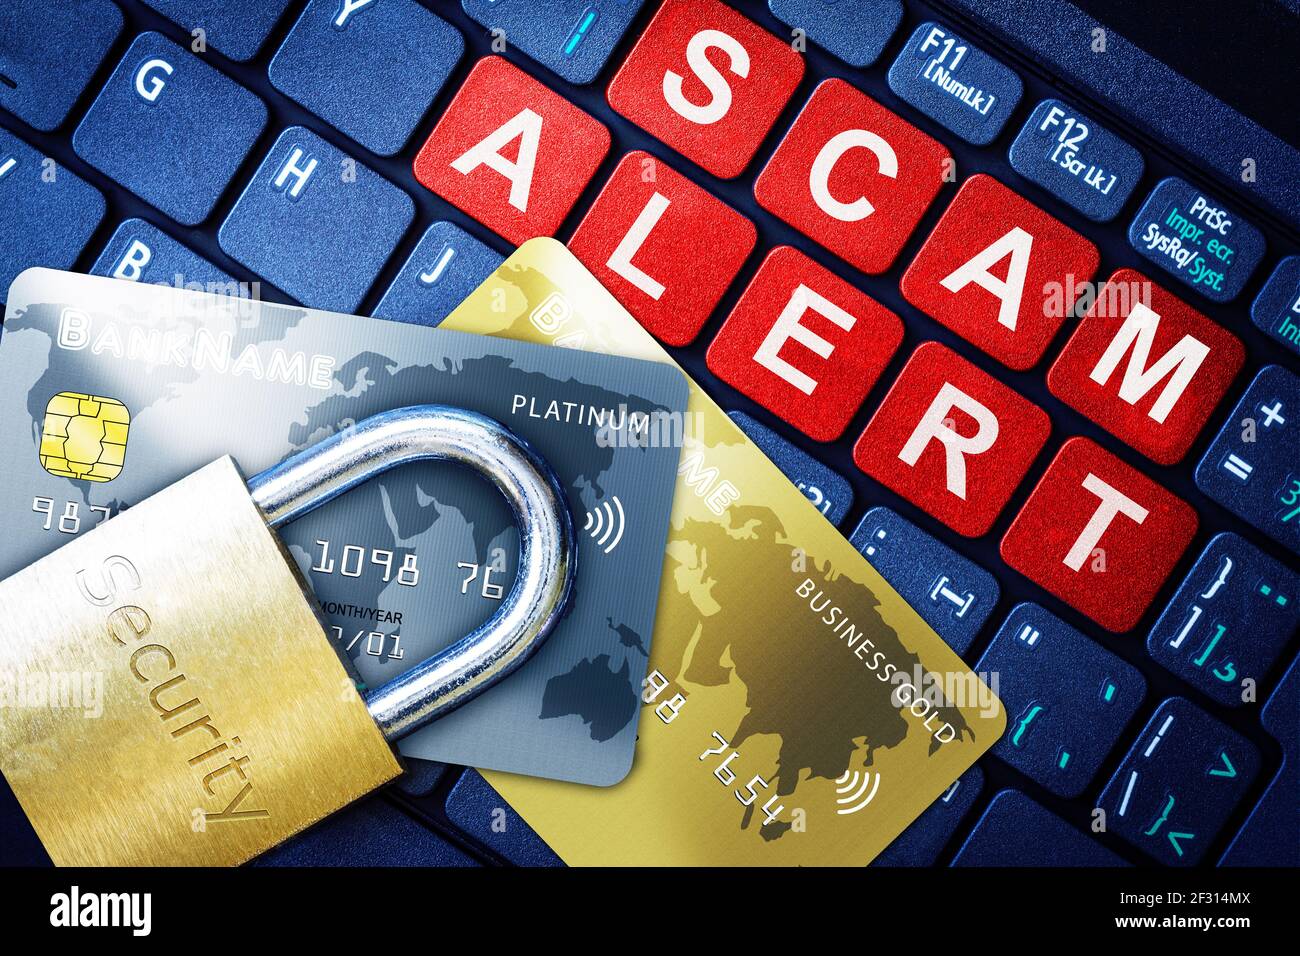 Scam Alert in roten Tasten auf High-Tech-Computer-Tastatur Hintergrund mit Sicherheit gravierten Schloss auf gefälschte Kreditkarten. Konzept der Internet-Sicherheit, Daten Stockfoto